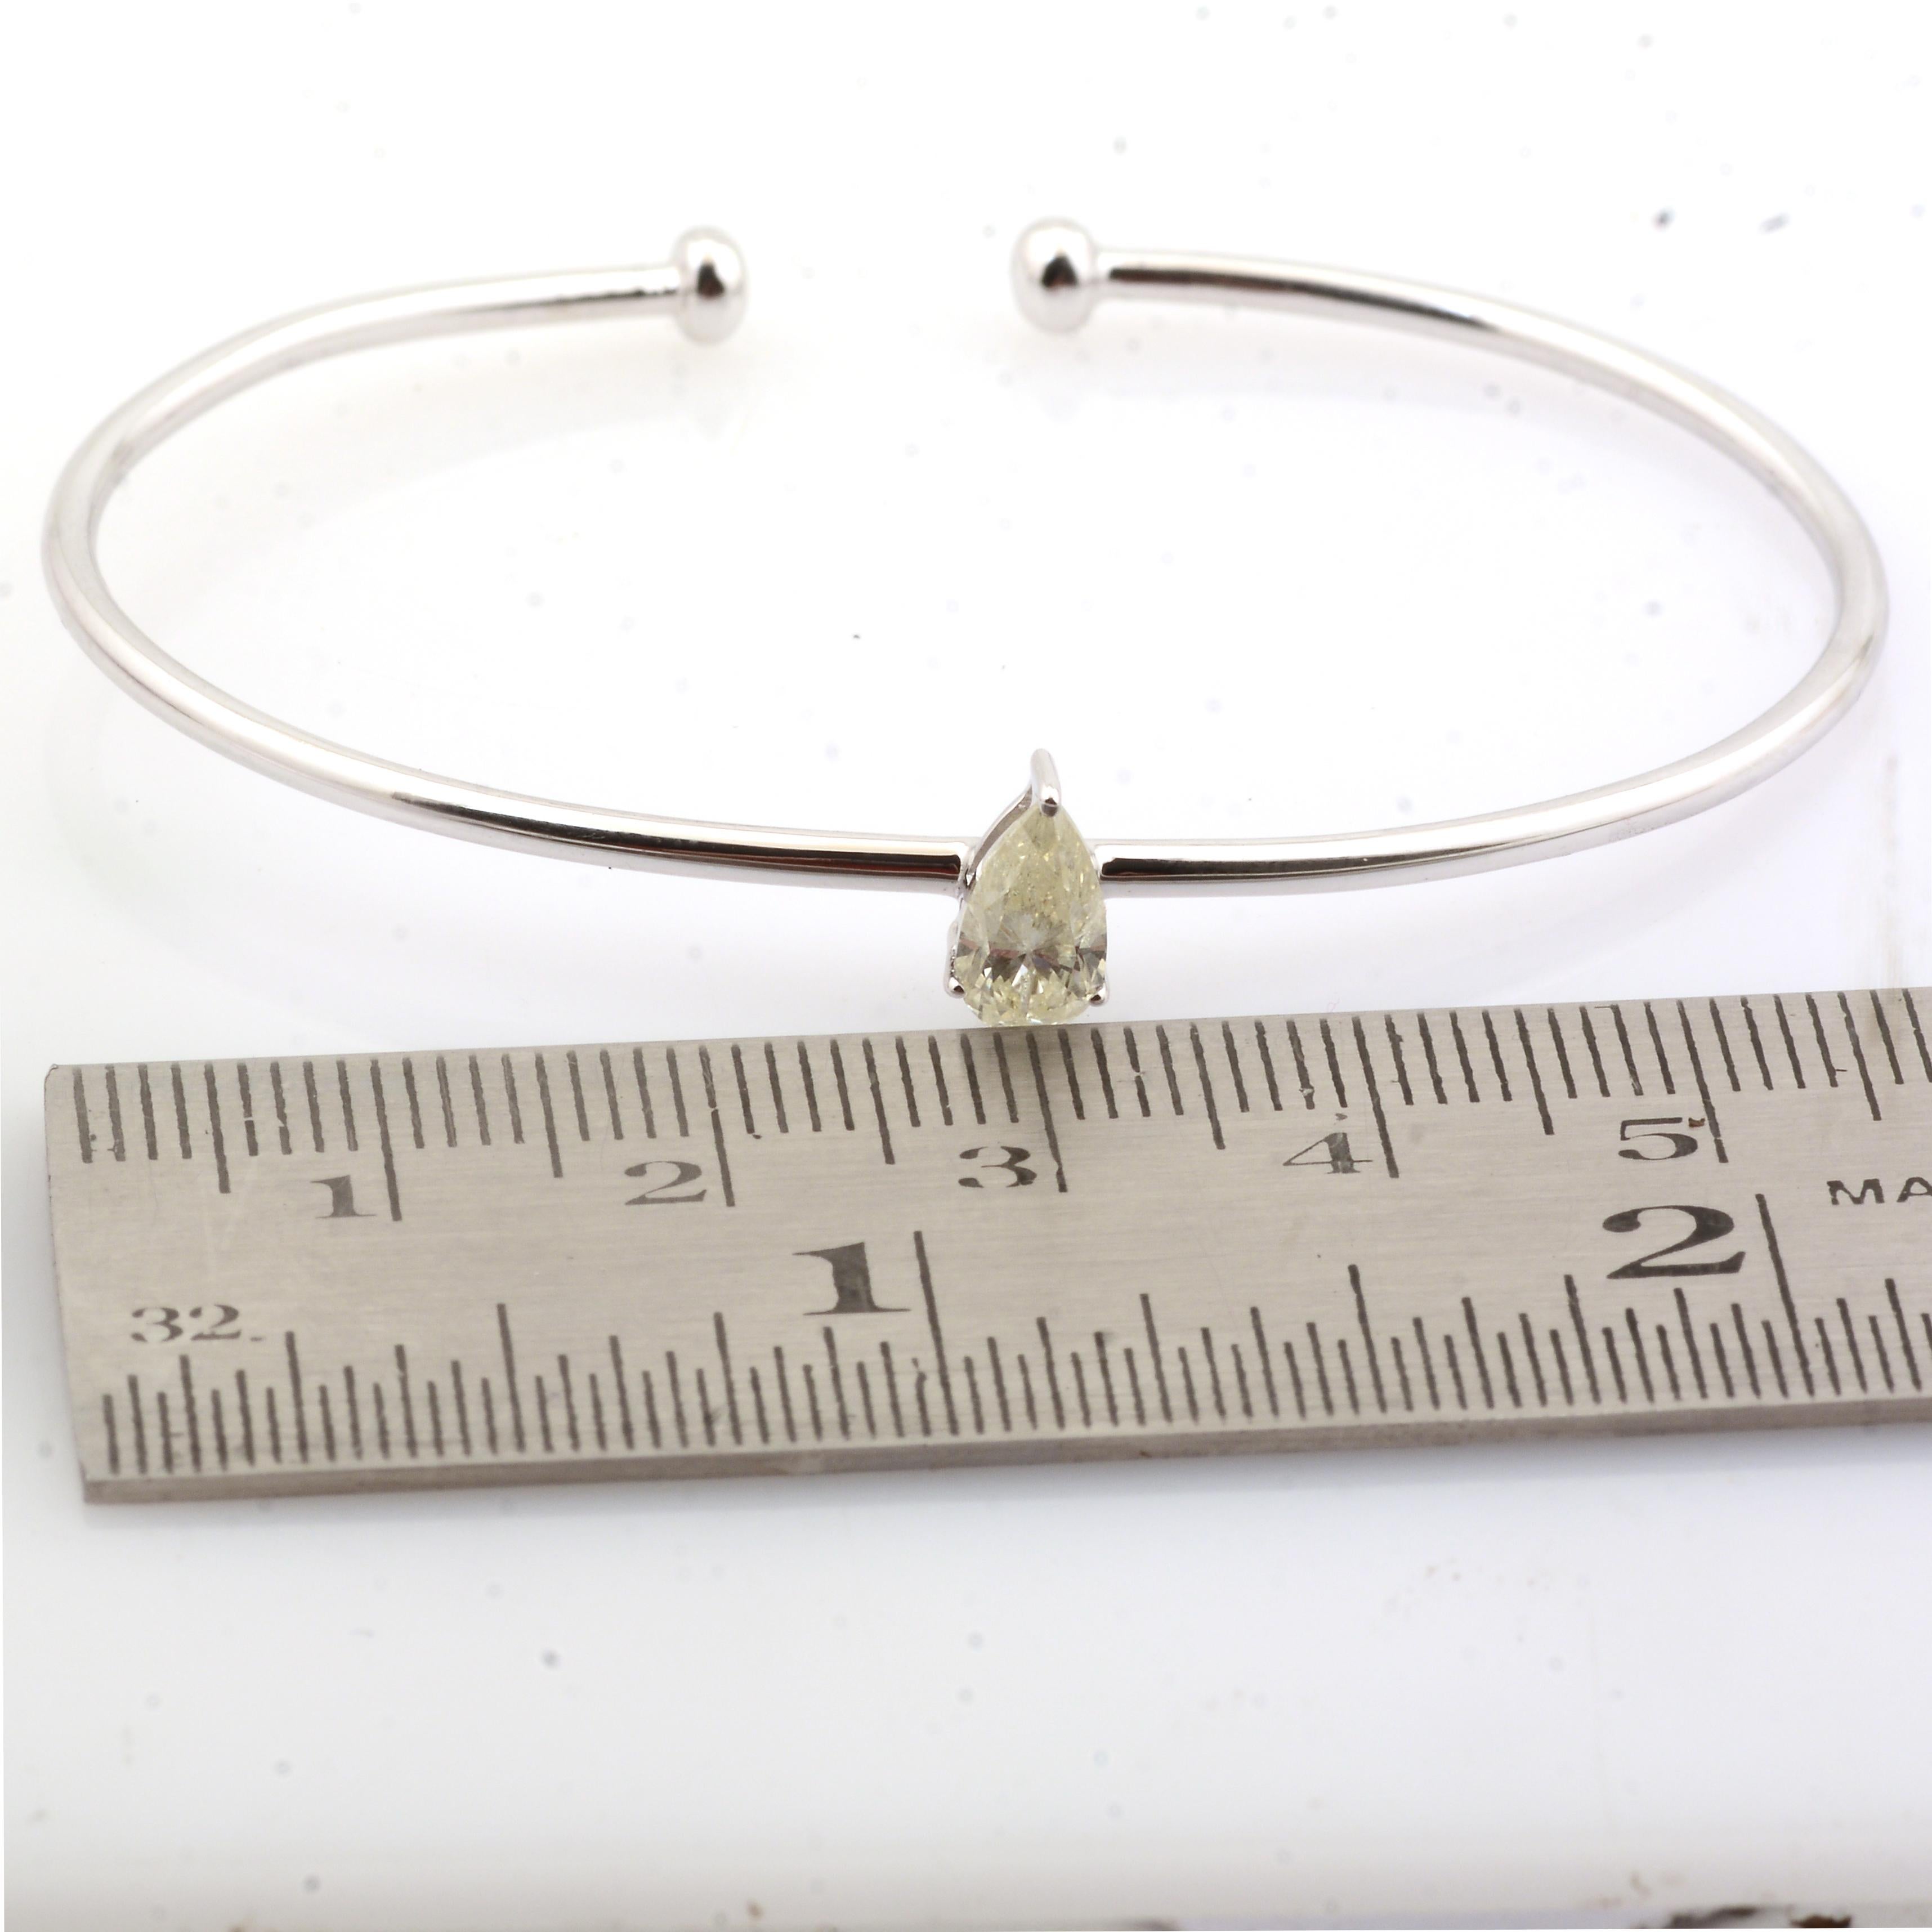 Code de l'article :- SEB-6184
Poids brut :- 3.45 gm
Or blanc massif 14k Poids :- 3.29 gm
Poids du diamant :- 0,78 carat  ( DIAMANT MOYEN DE PURETÉ SI1-SI2 ET DE COULEUR H-I )
Taille du bracelet :- 56 mm (diamètre extérieur)

✦